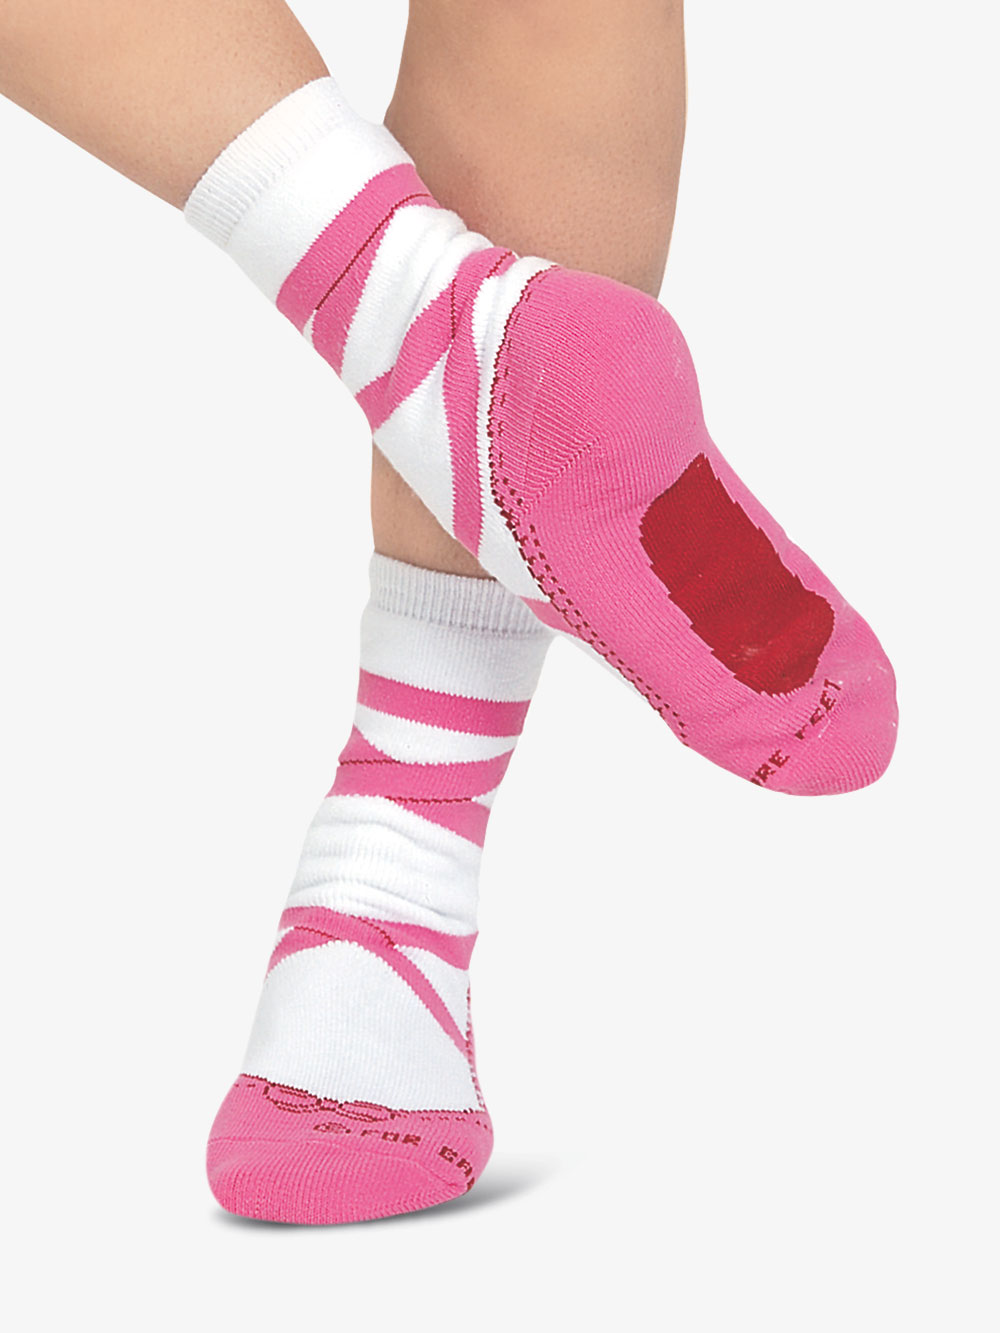 socks for ballet shoes